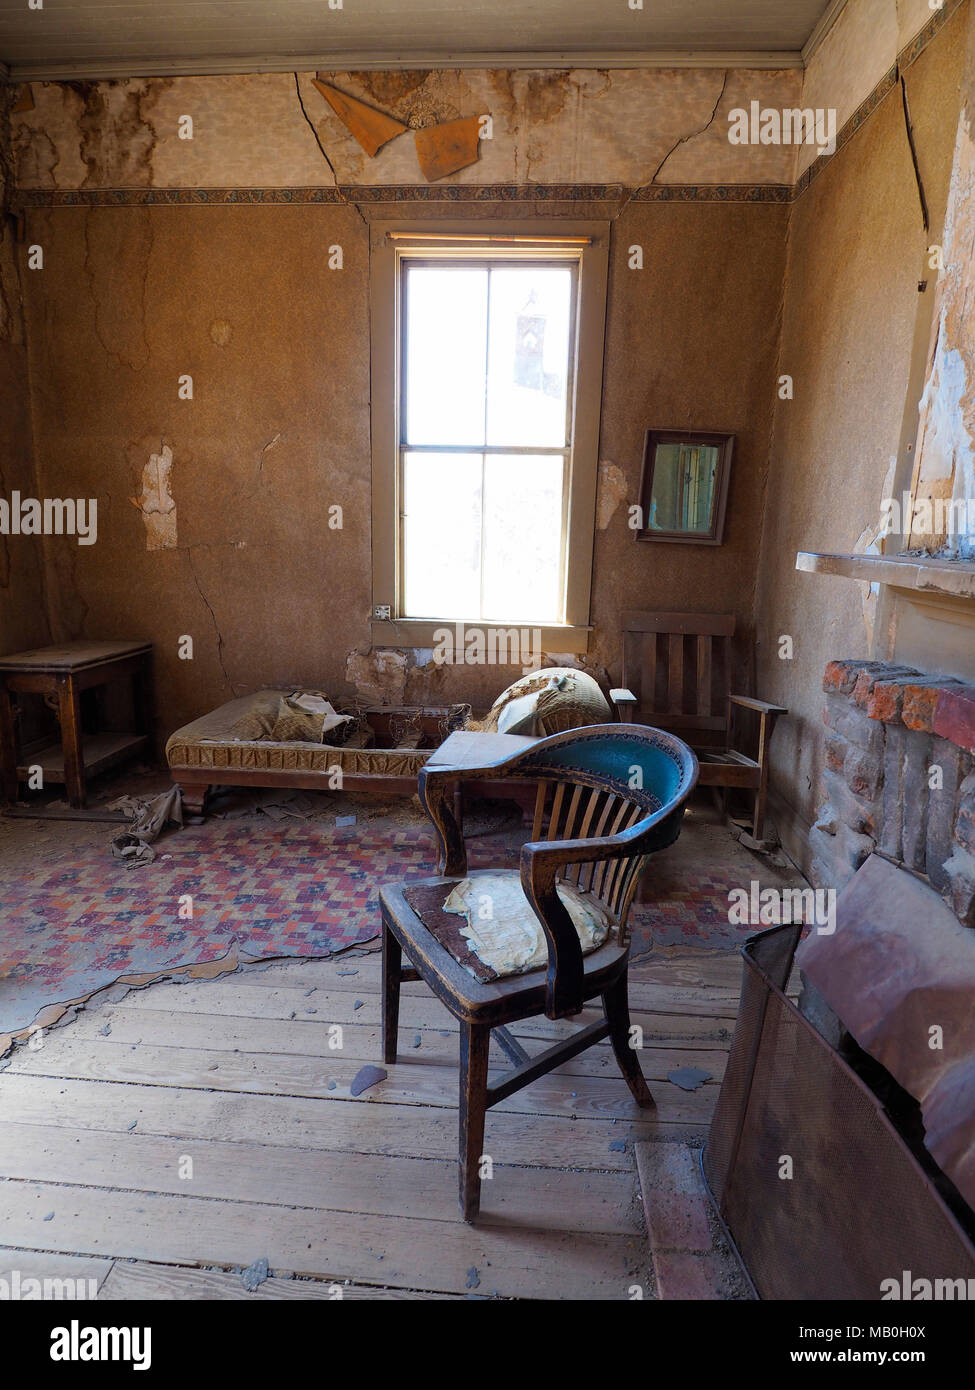 Werfen Sie einen Blick in das Wohnzimmer eines verlassenen, öden Gebäude an Bodie State Historic Park, einem ehemaligen Wilden Westen Goldrausch Boomtown, jetzt eine Geisterstadt. Stockfoto